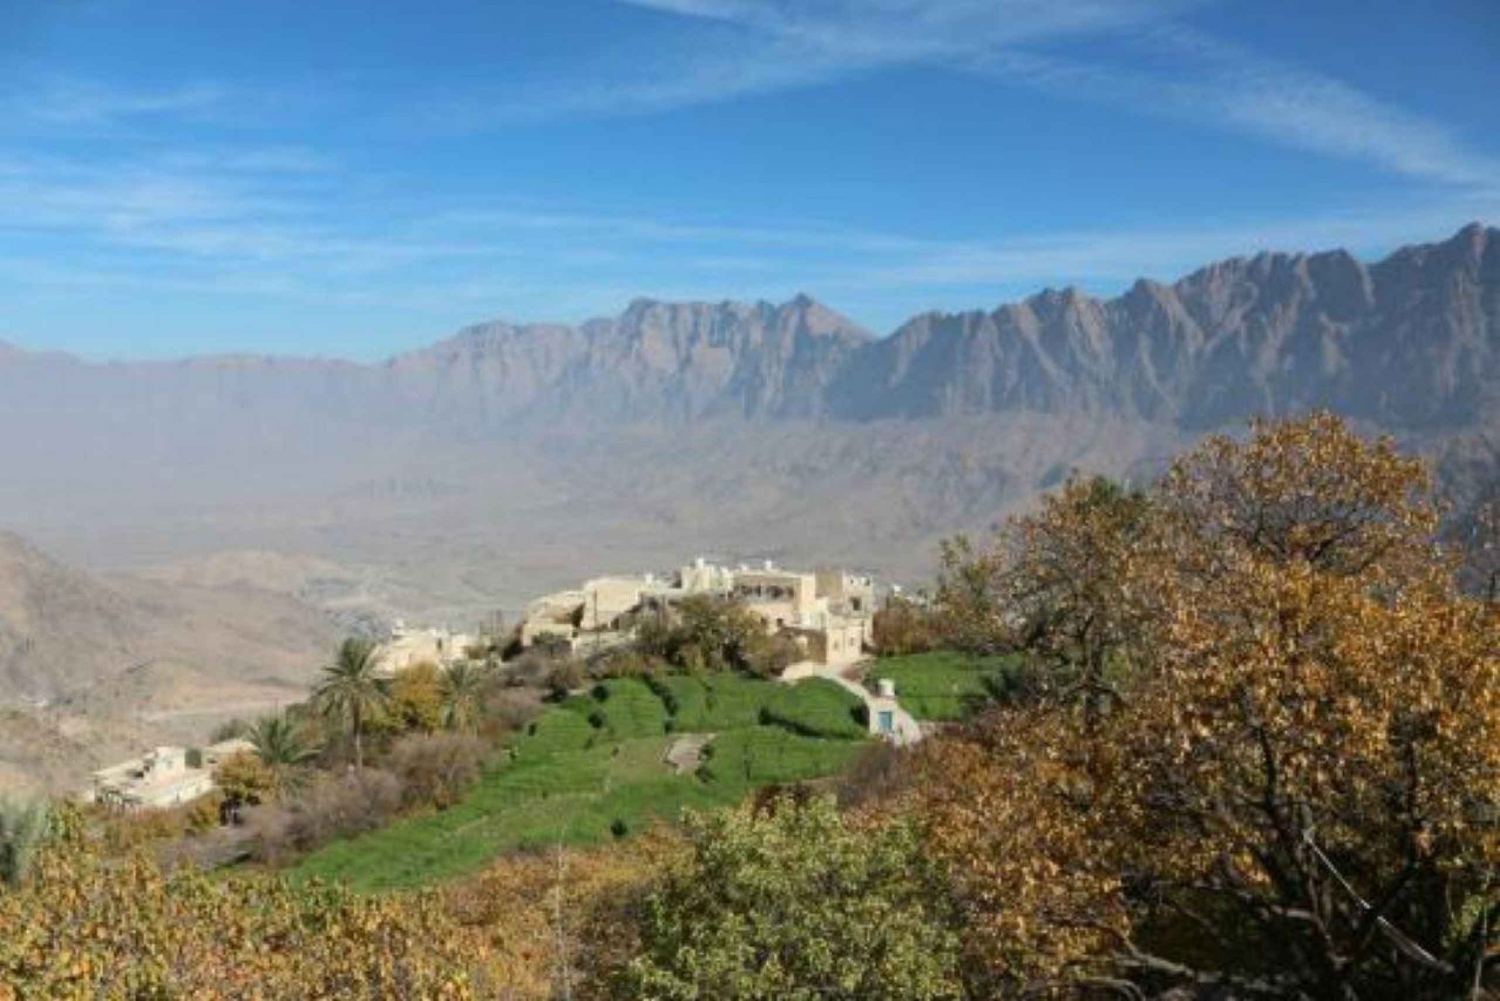 Tagestour nach Wadi Bani Awf, Balad Sayt, Wekan Village, Nakhal